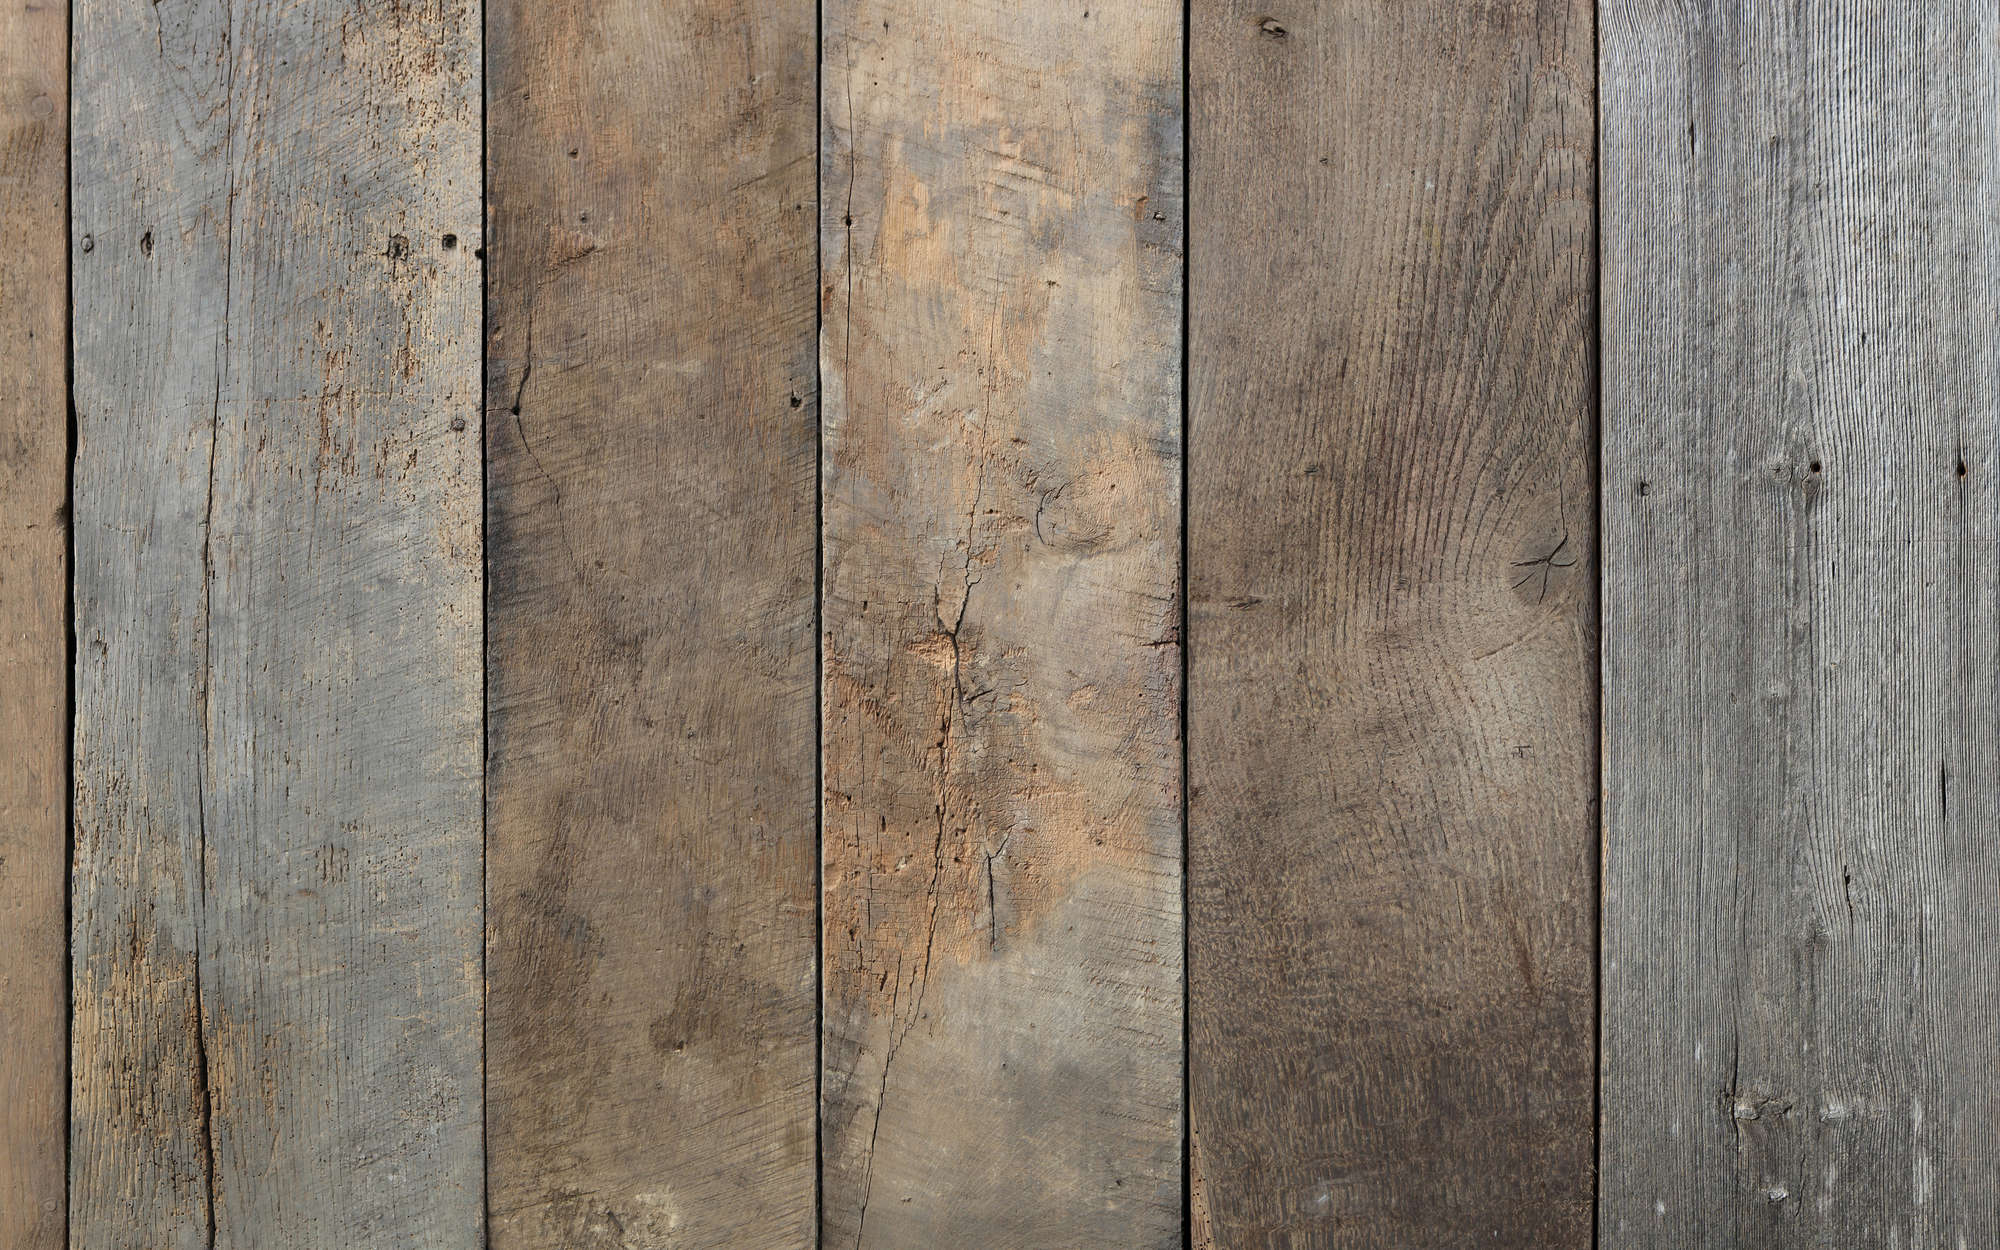             Old wooden floorboards mural - Premium smooth fleece
        